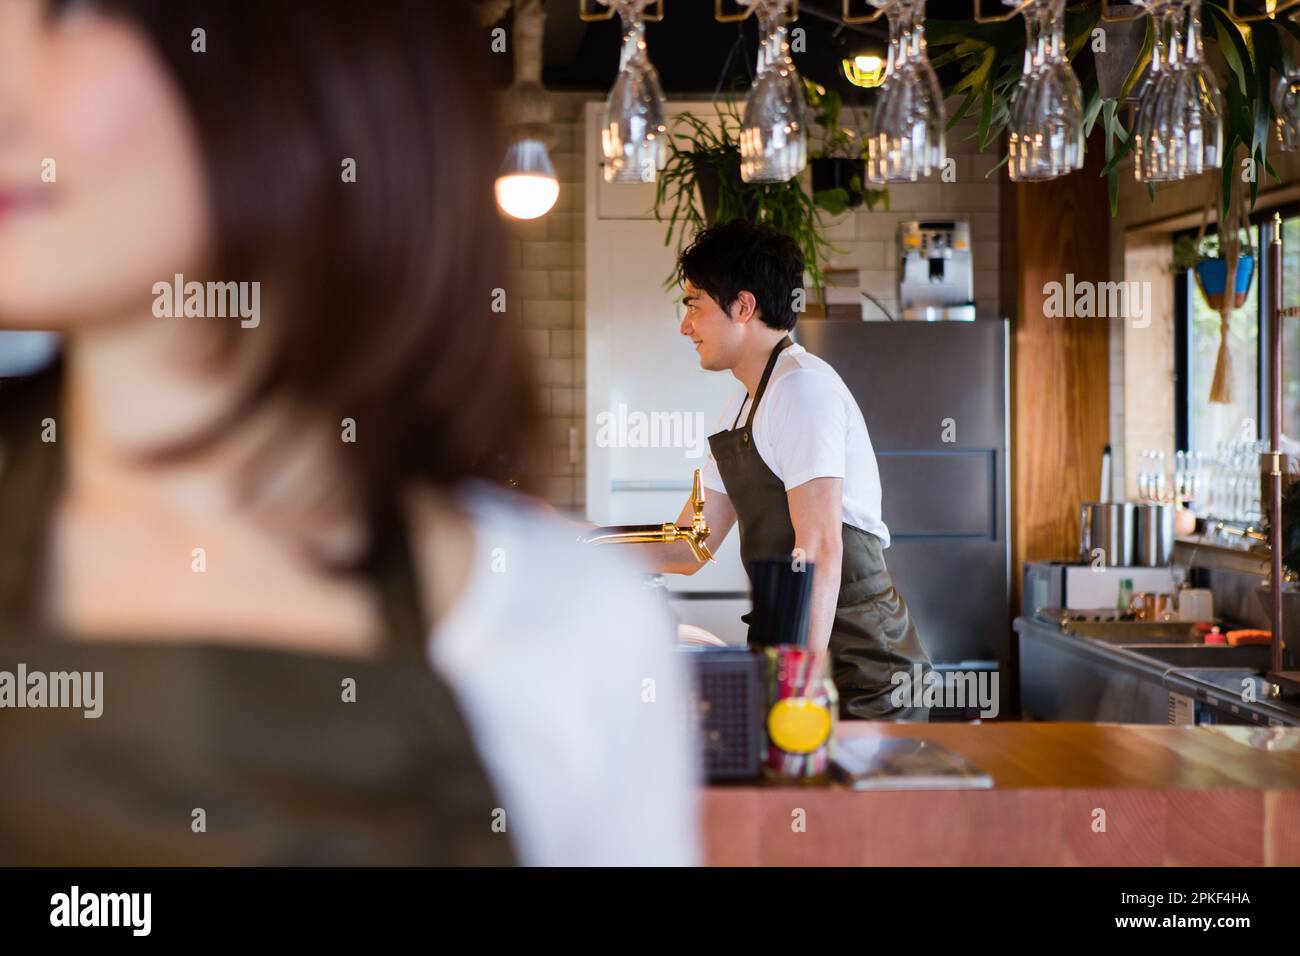 Cafe waitress Stock Photo